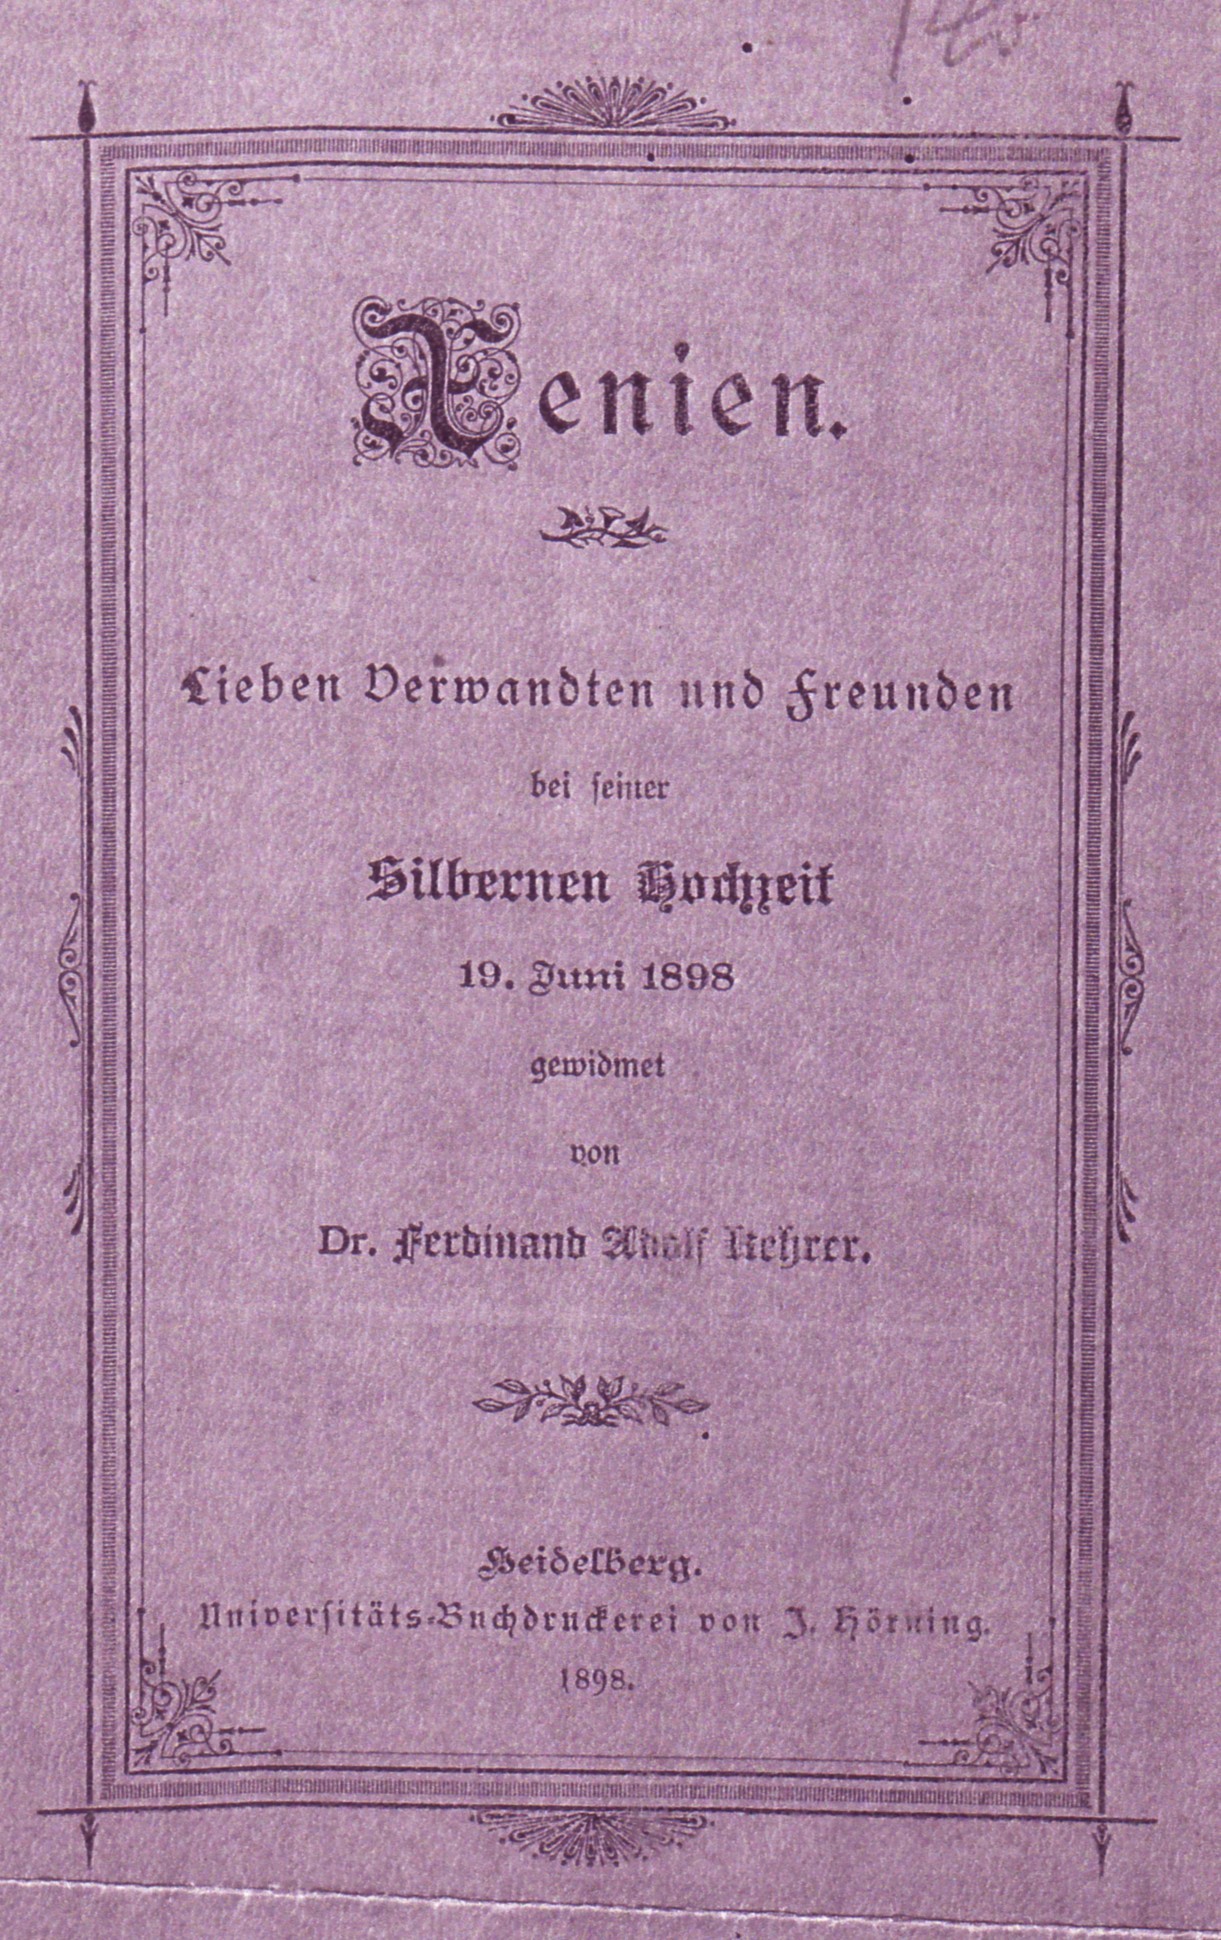 Xenien von Dr. Ferdinand Adolf Kehrer (Kulturverein Guntersblum CC BY-NC-SA)